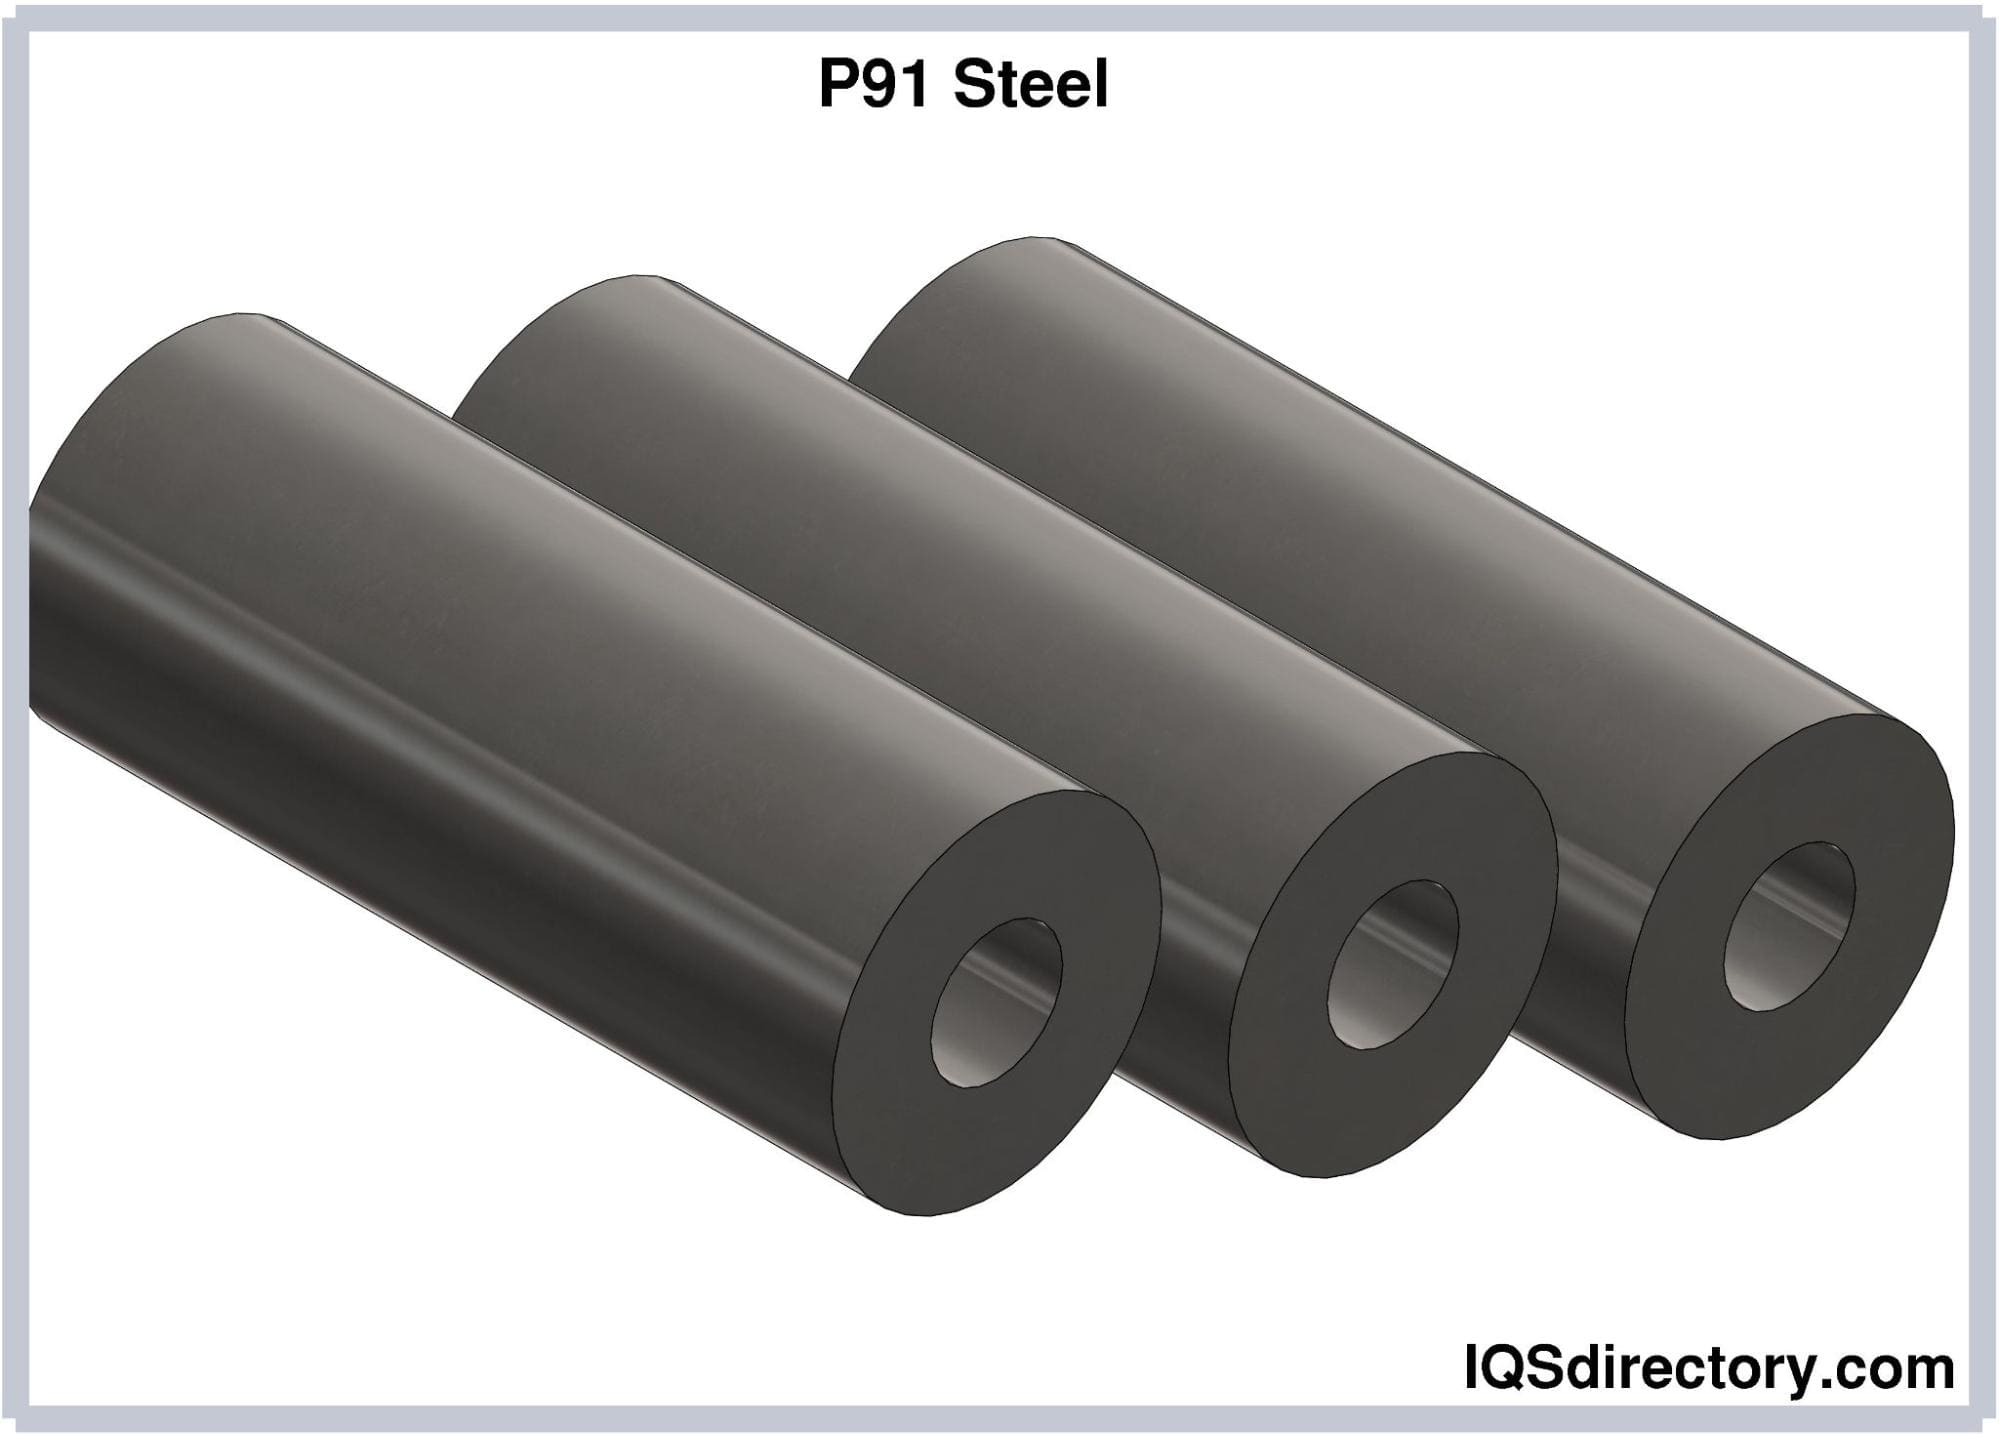 P91 Steel